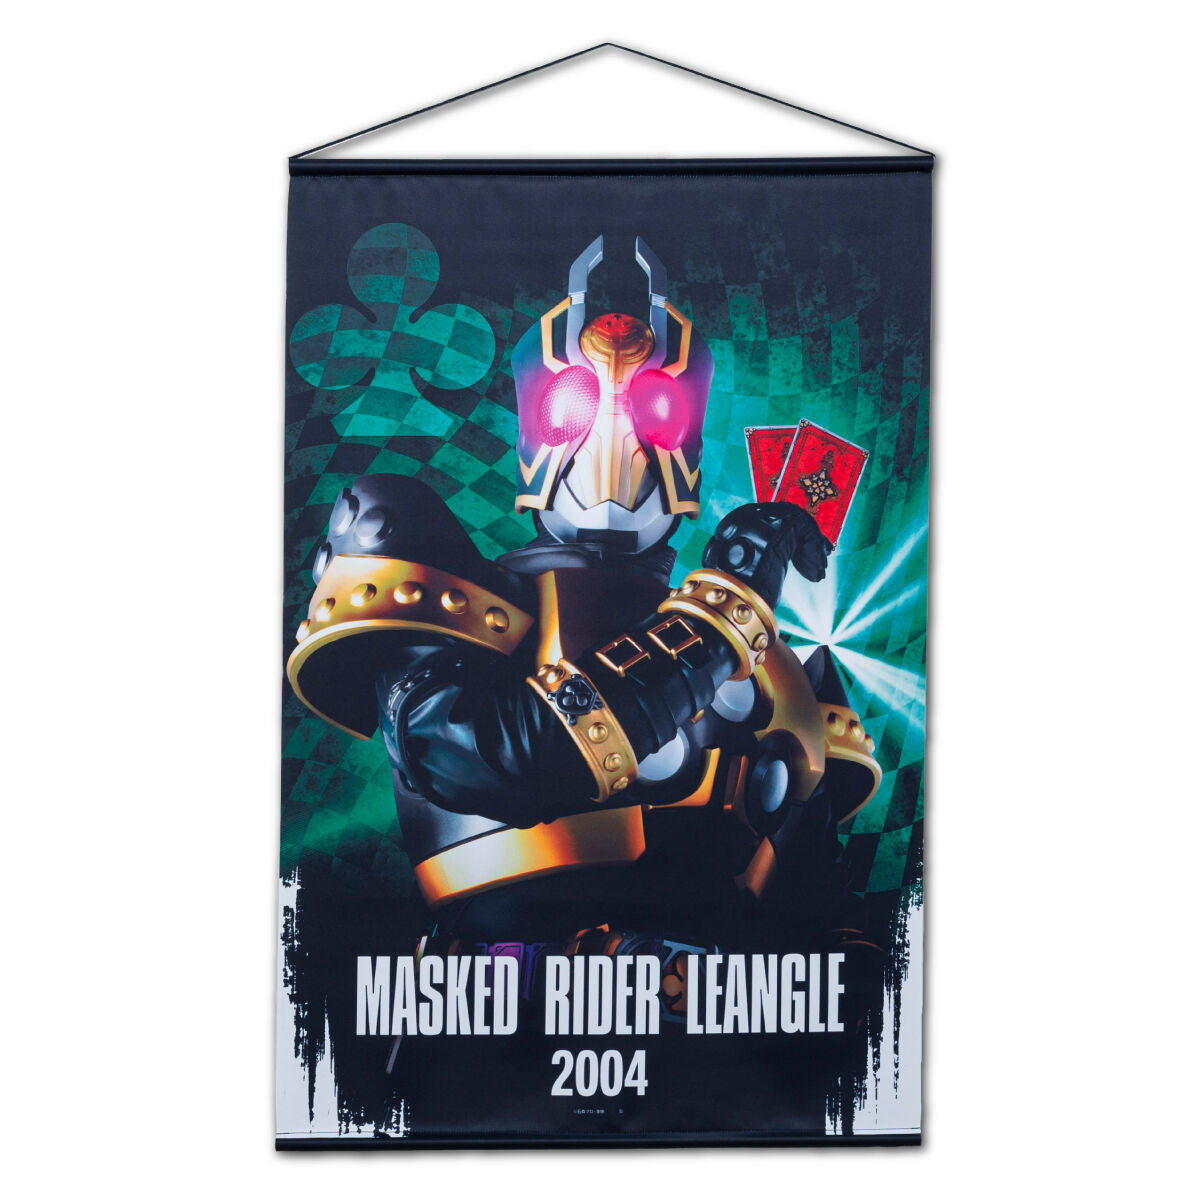 Kamen Rider Blade Hanging Wall Tapestries